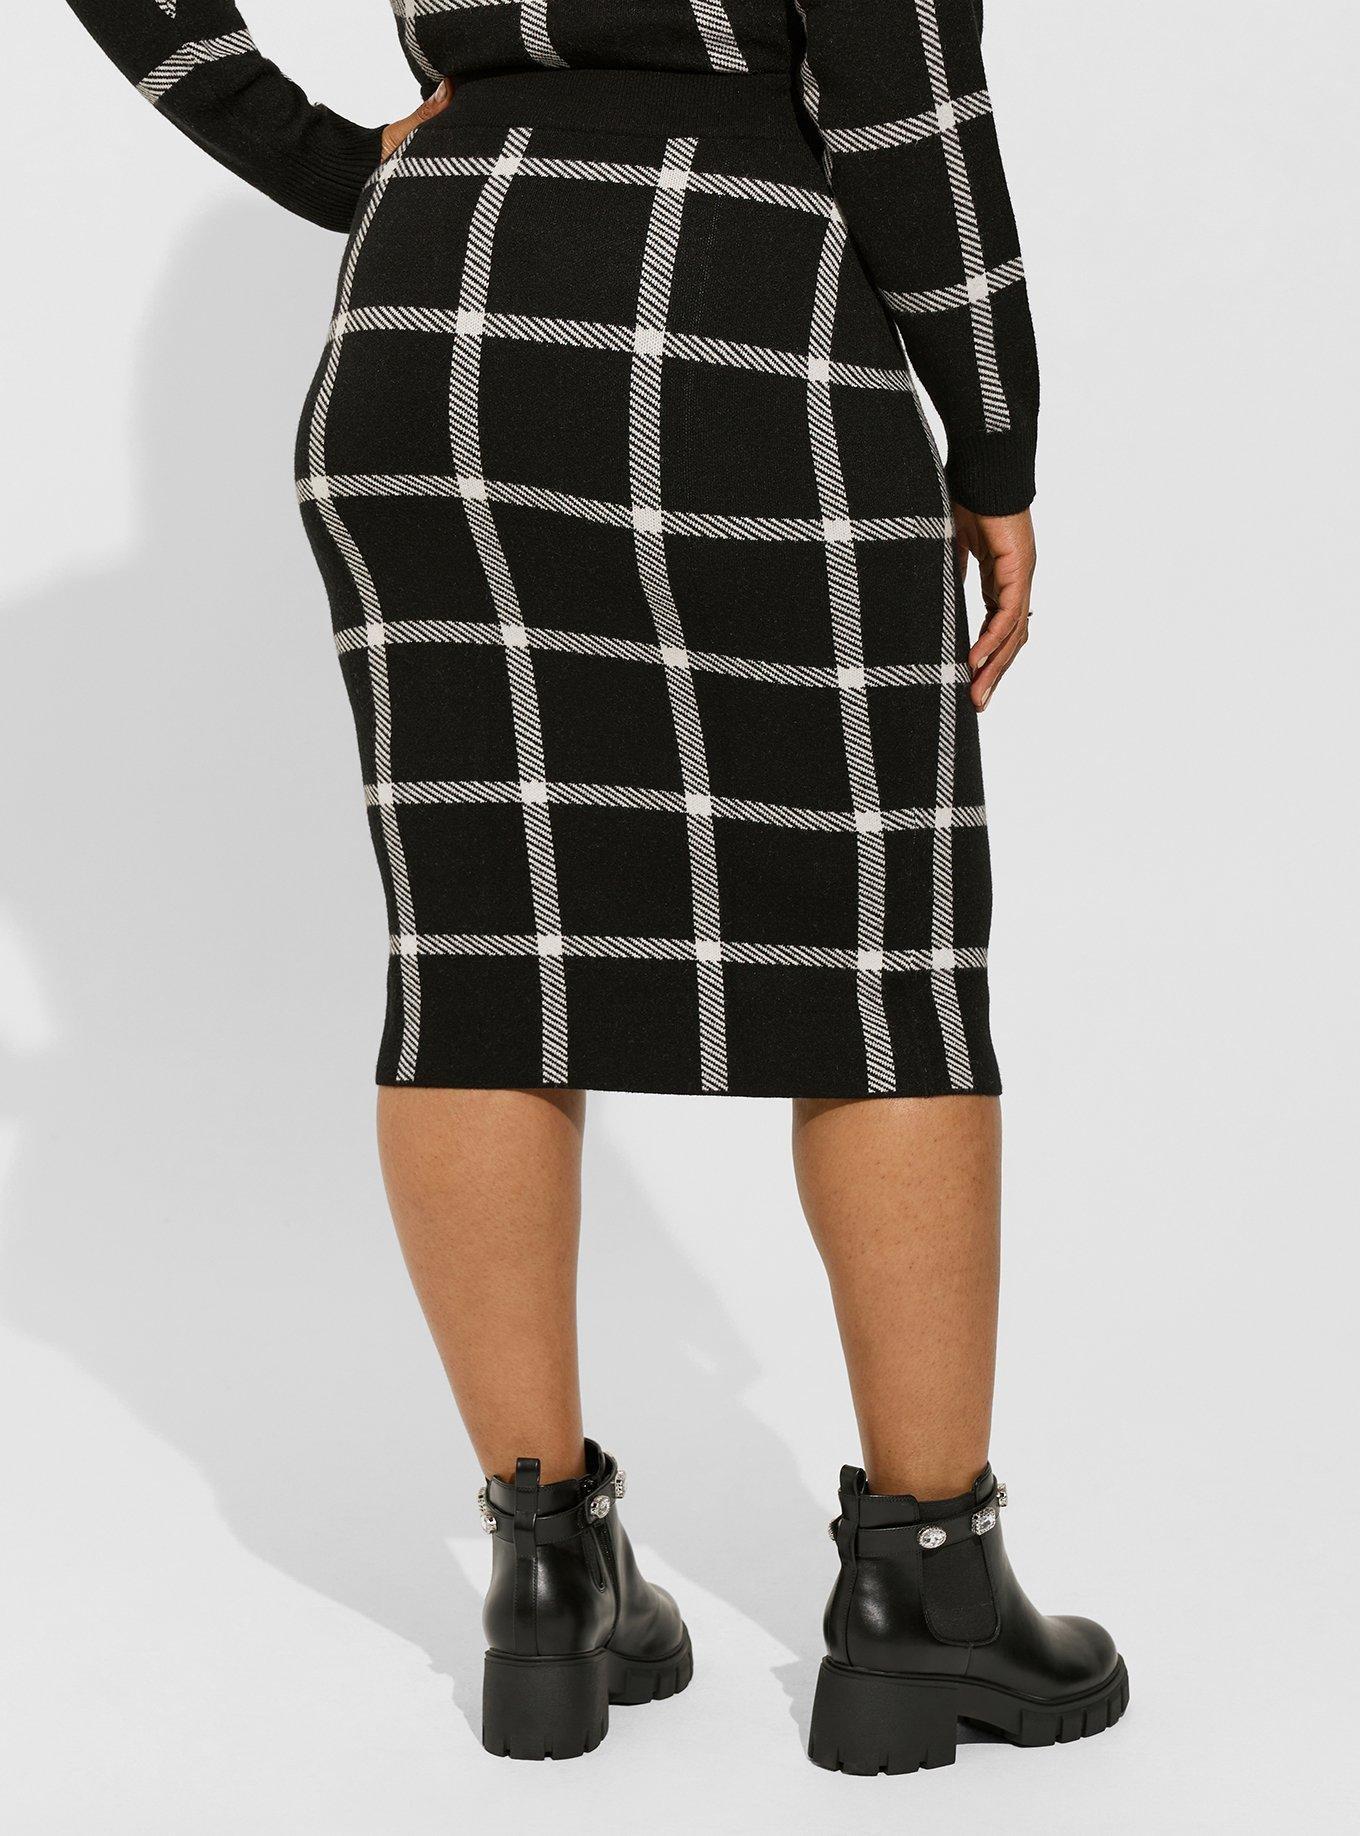 Dominica Gray Faux Wrap Athletic Skirt (hidden leggings) – Skirt Society